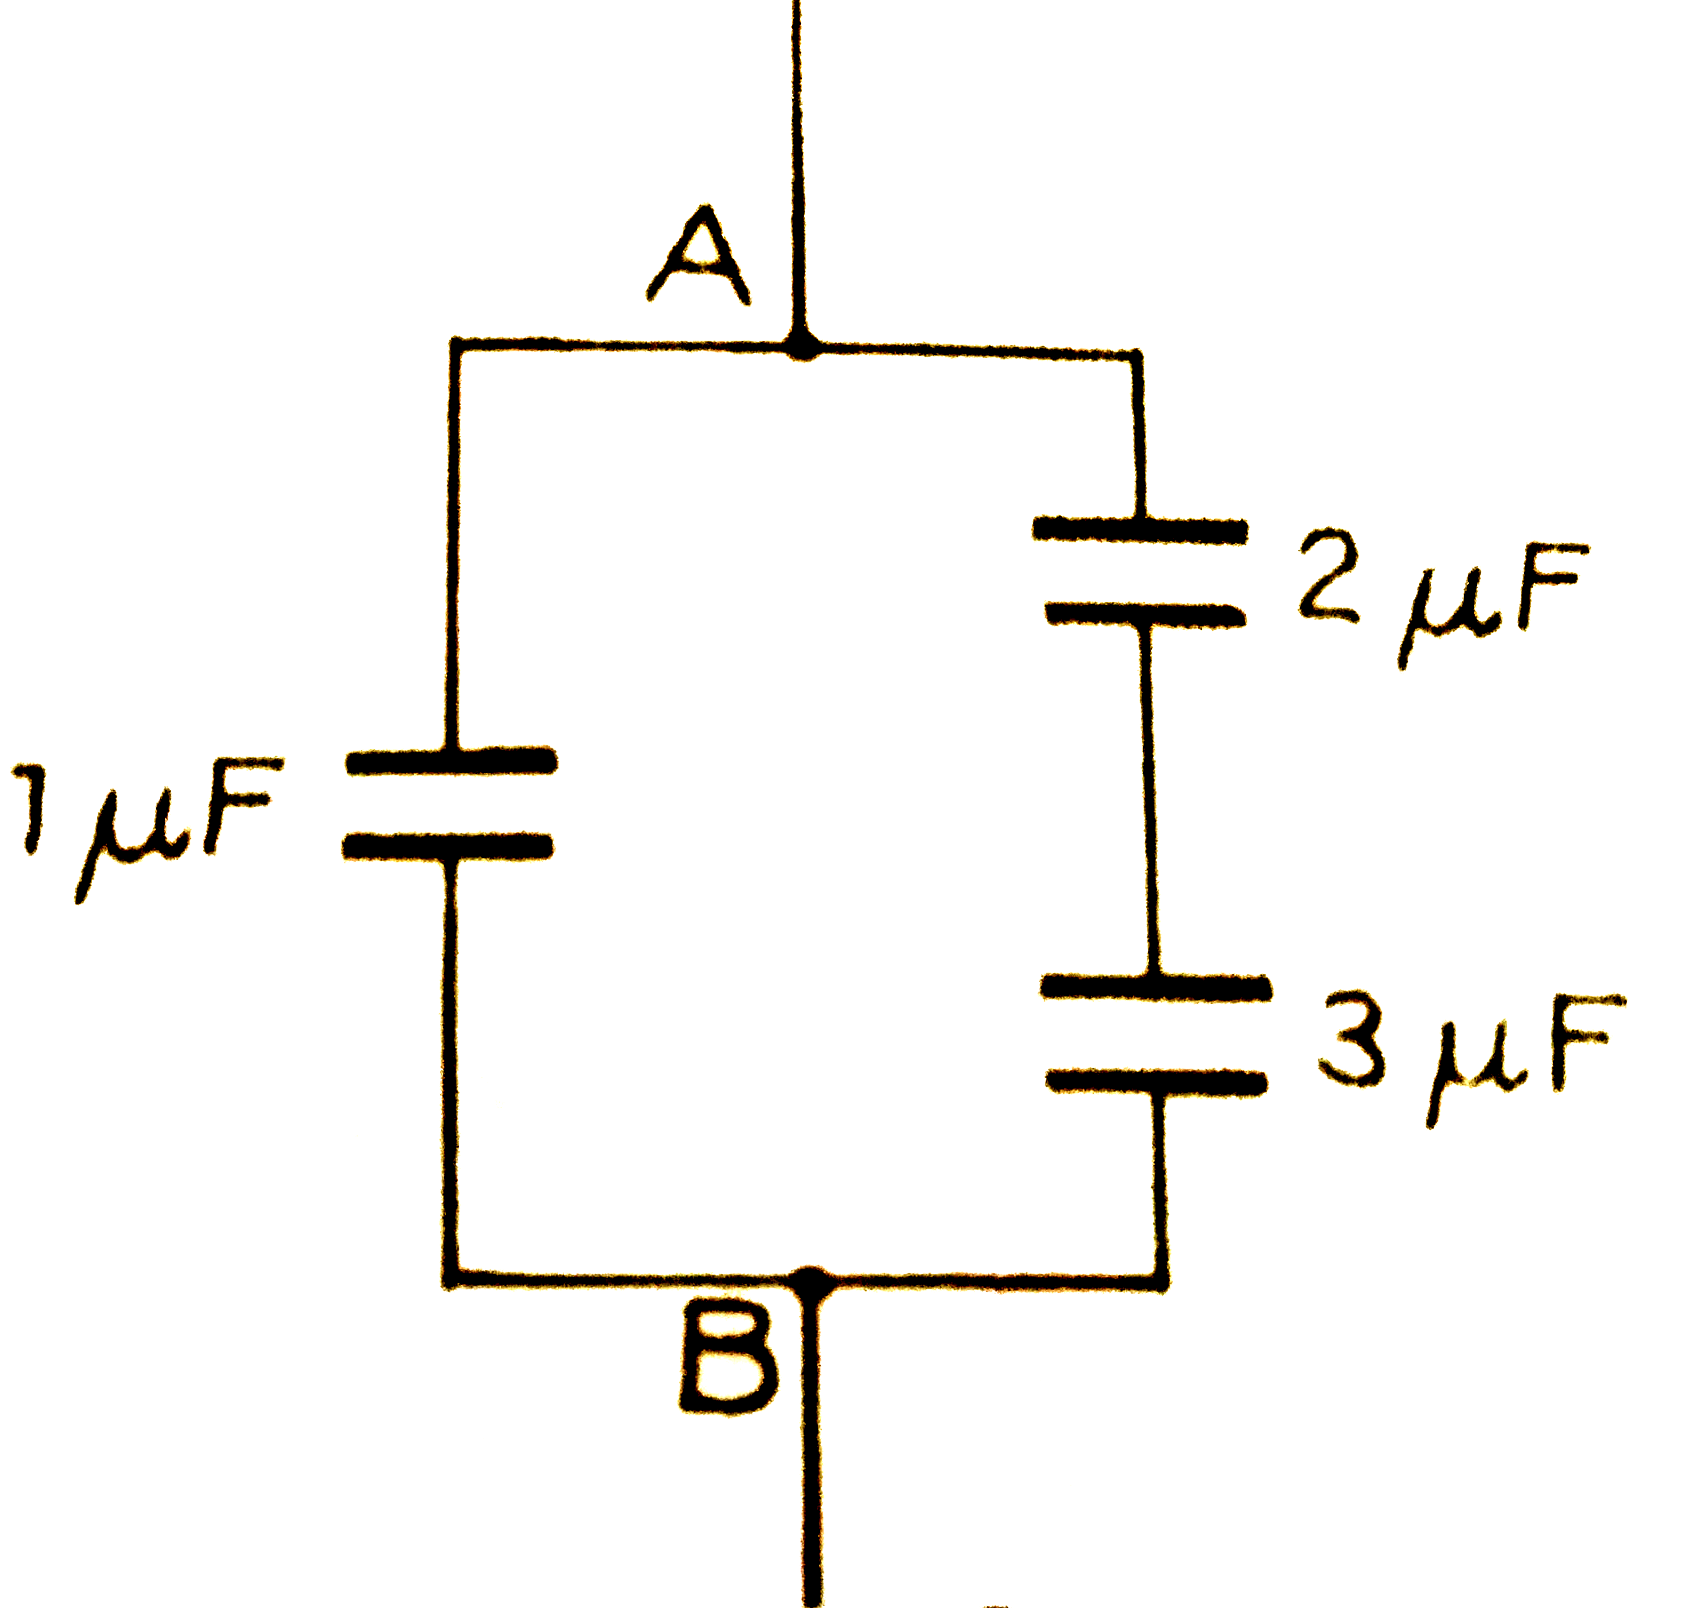 संलग्न चित्र के अनुसार तीन संधारित्र परस्पर जोड़े गये है। बिन्दुओ A or B के बीच विभवांतर 40 वोल्ट है। इन बिन्दुओ के बीच तुल्य-धारिता की गणना कीजिए। प्रत्येक संधारित्र पर आवेश की गणना कीजिए।